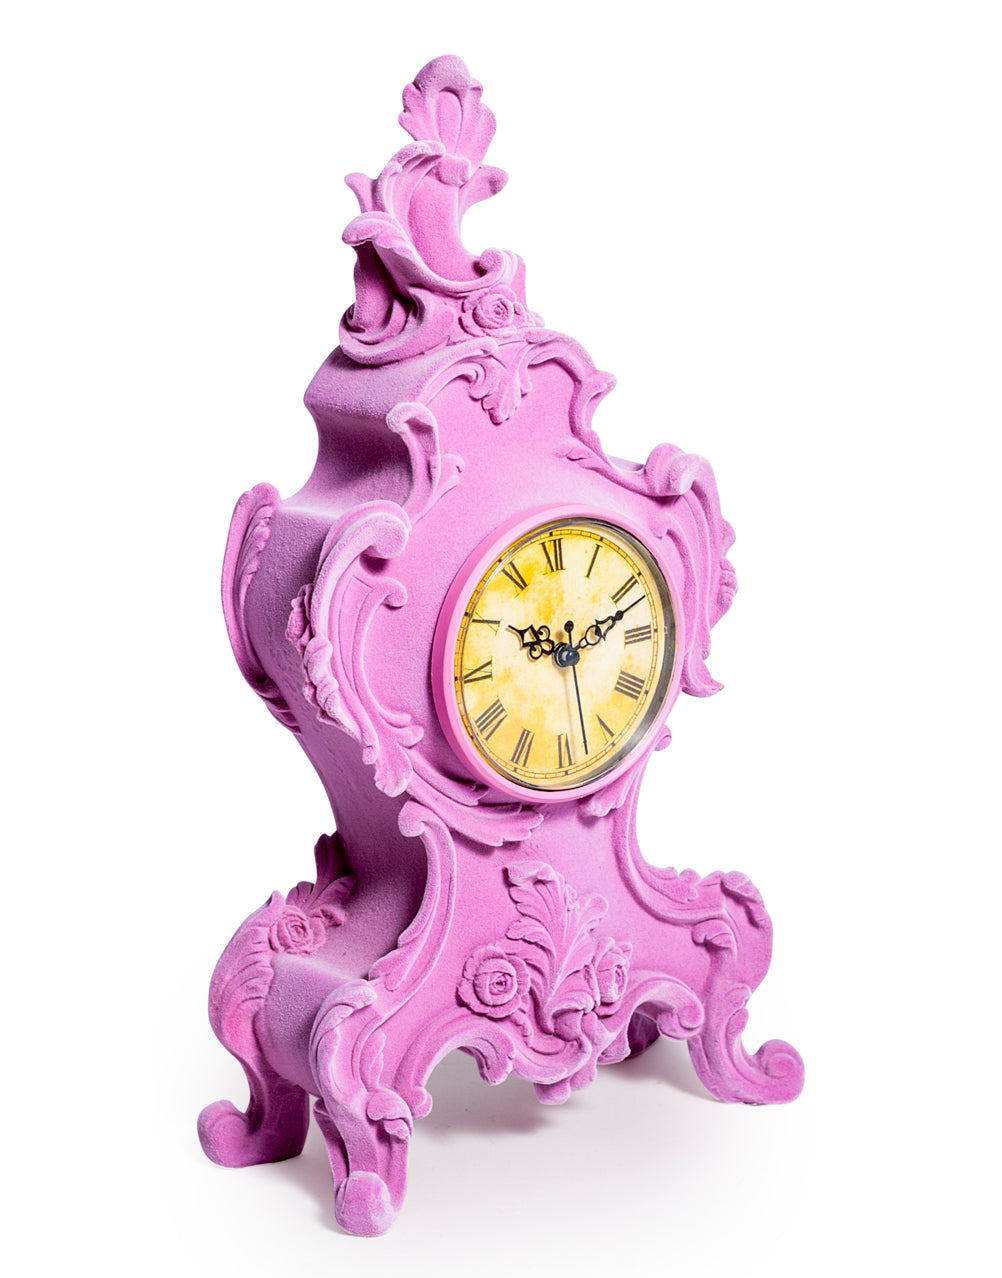 Soft Pink Flock Ornate Mantle Clock